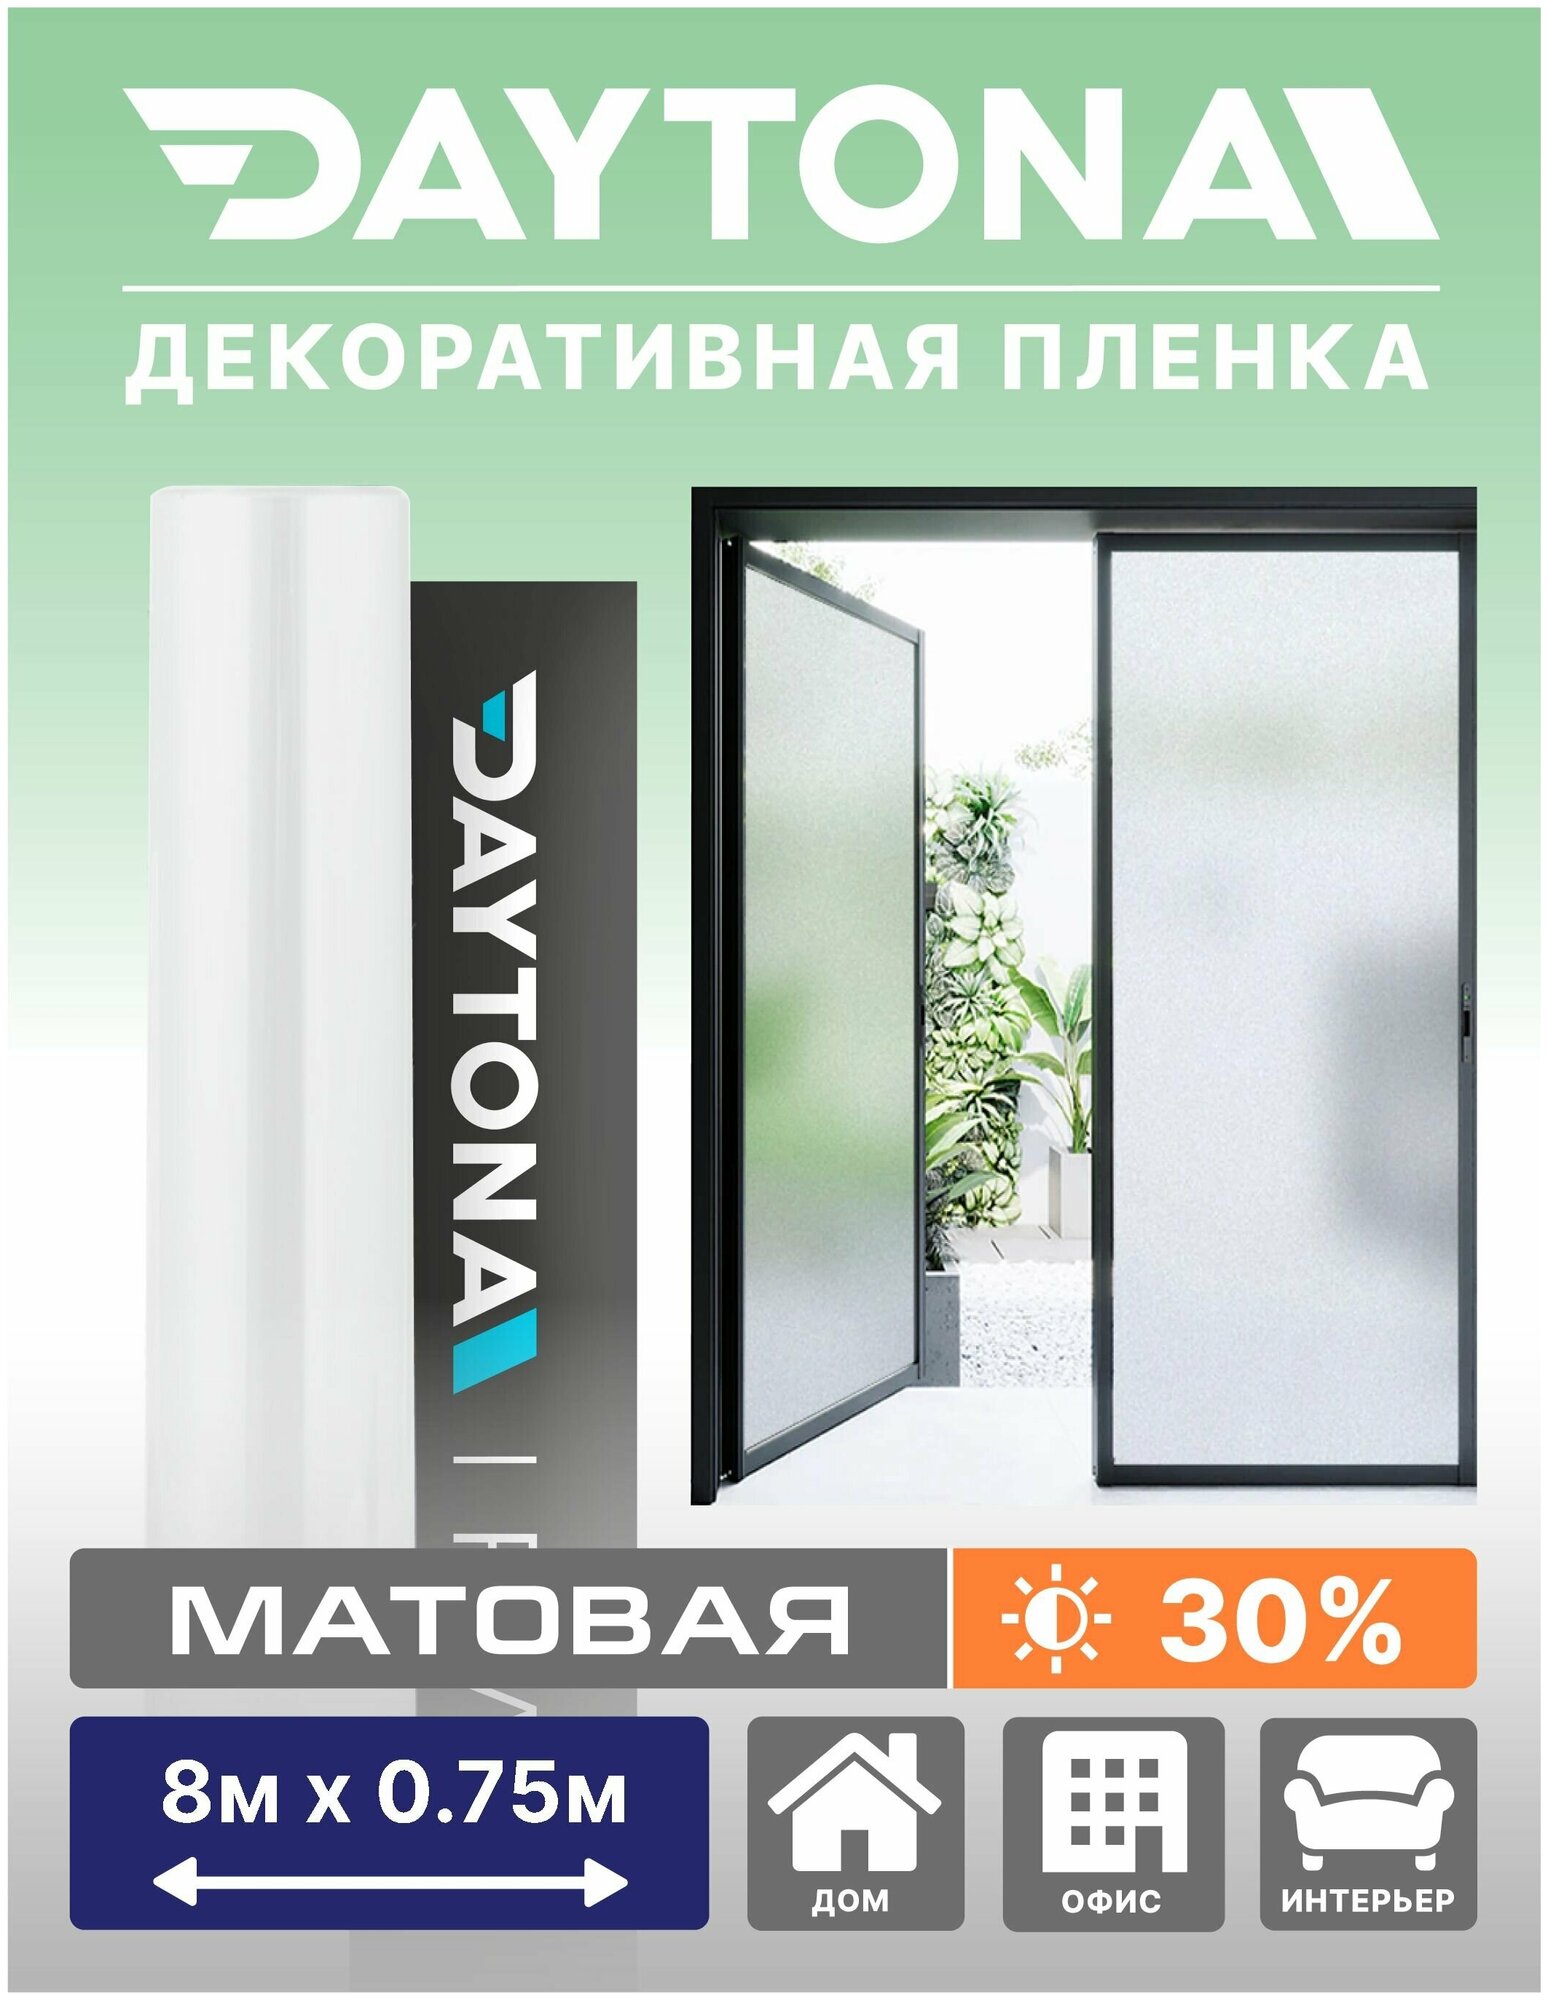 Матовая пленка на окно белая 30% (8м х 0.75м) DAYTONA. Декоративная защита для окон